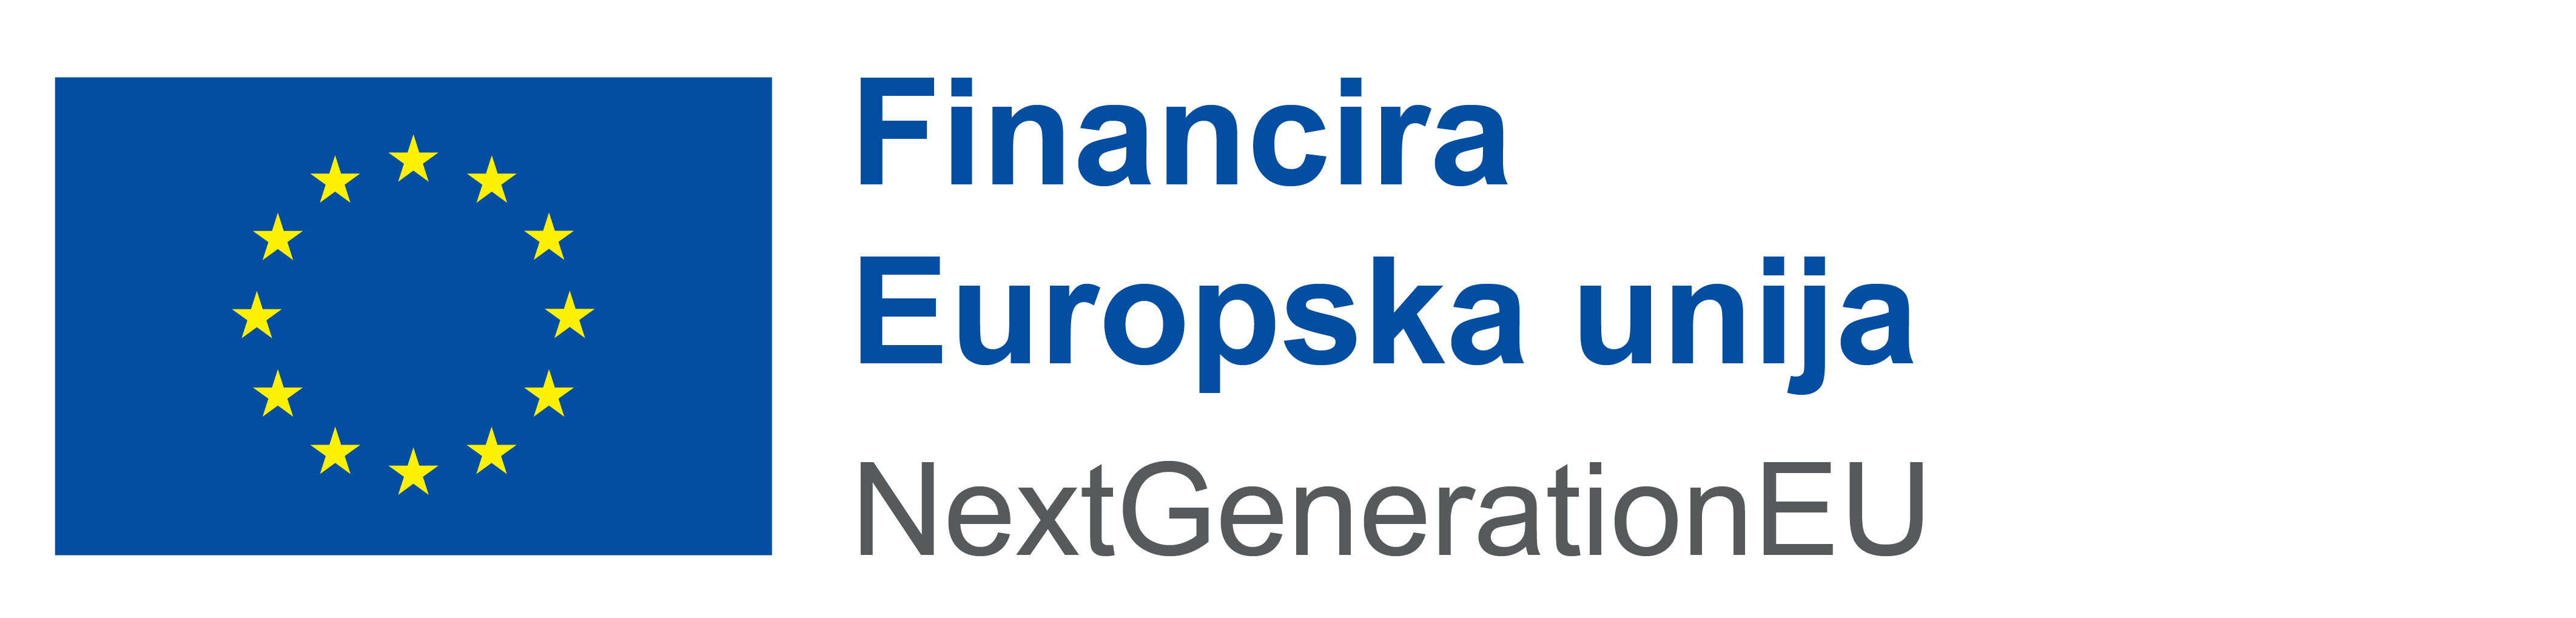 HR Financira Europska Unija POS Logo